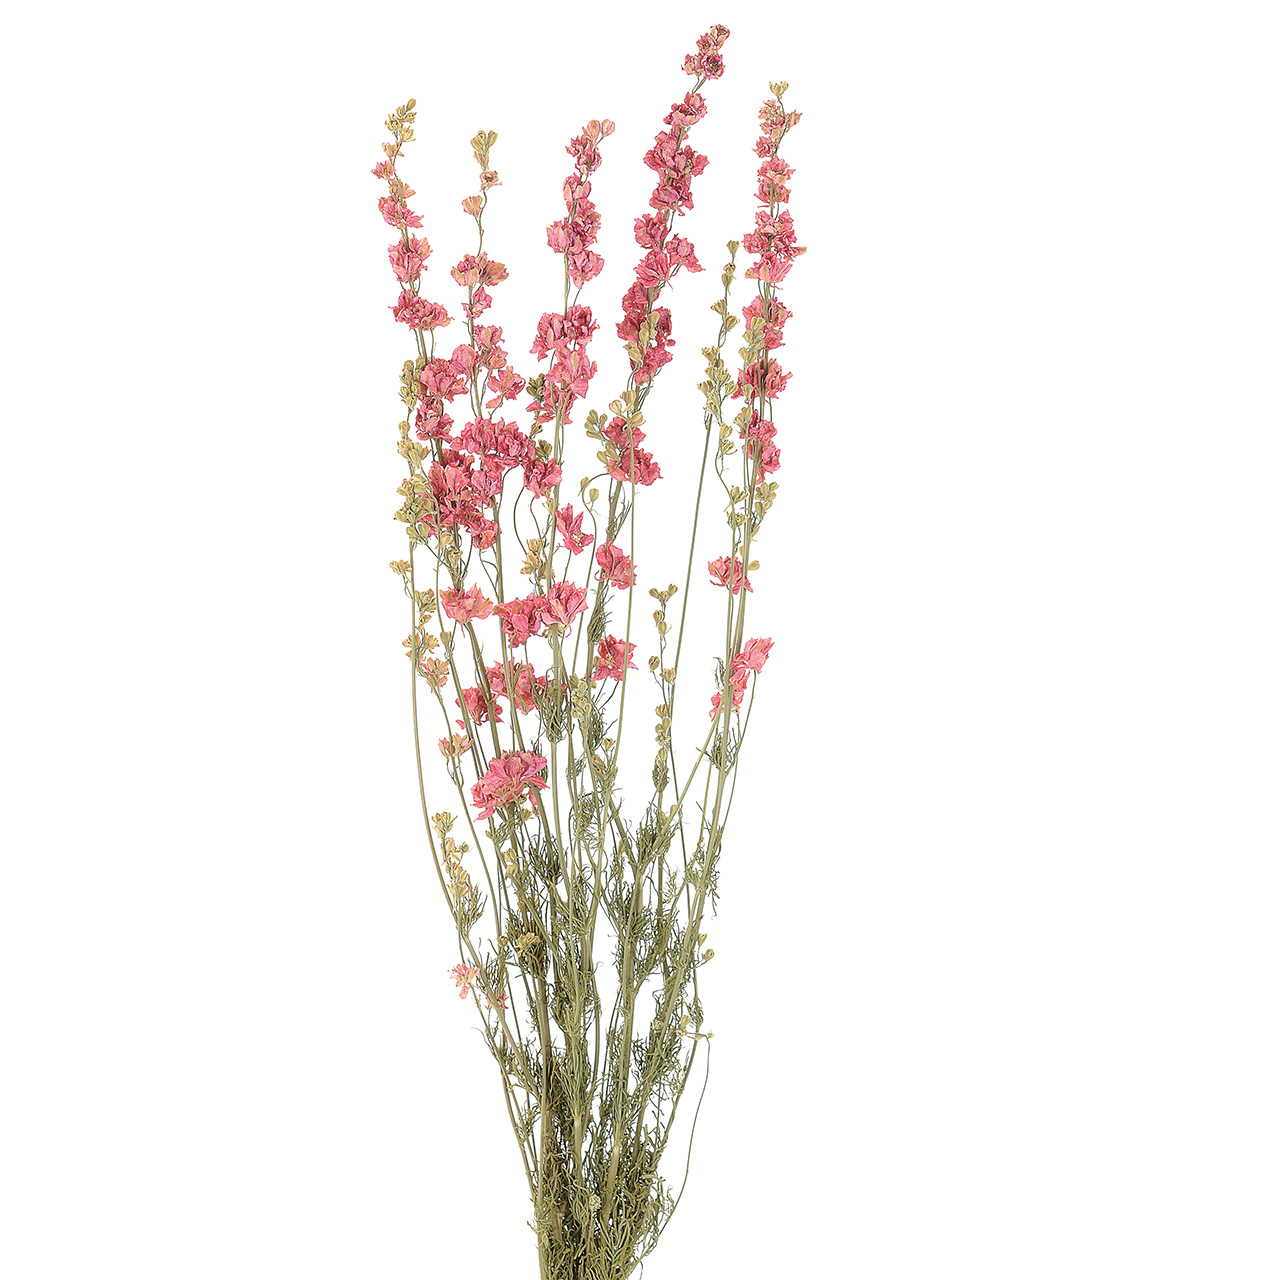 マイフラ】 通販/デルフィニューム ナチュラルピンク ドライフラワー DE017504(ナチュラルピンク): ドライフラワー ナチュラル 素材/全国にMAGIQ、花器、花資材などをお届けします。